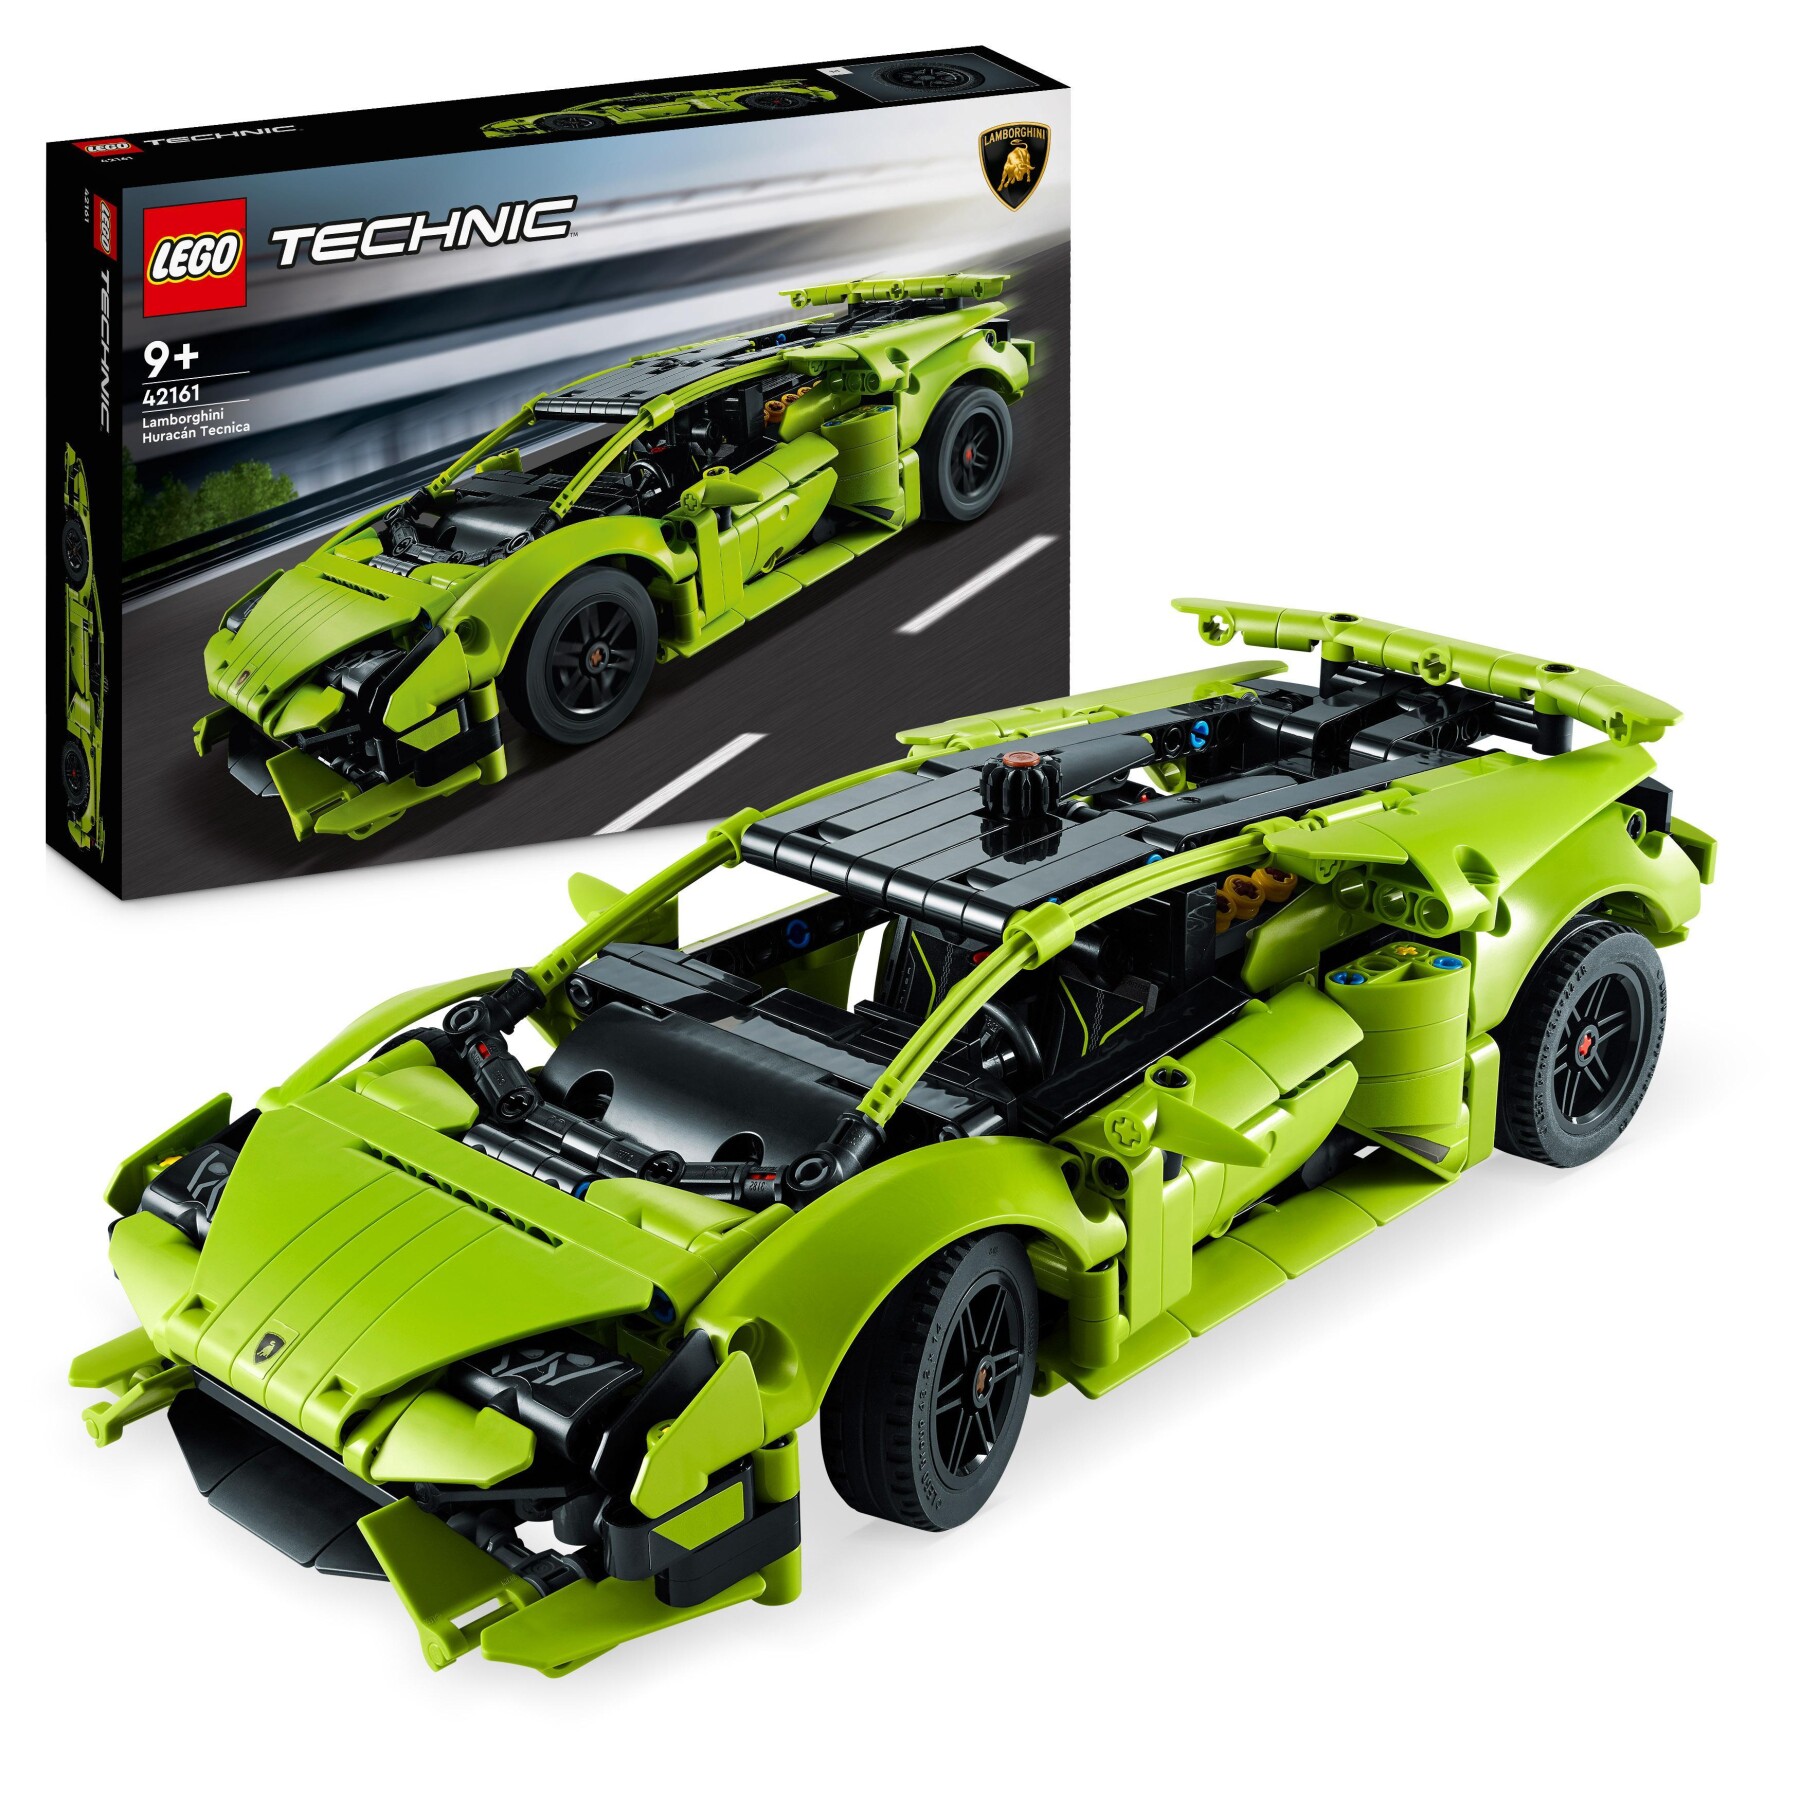 Lego technic 42161 lamborghini huracán tecnica, modellino di auto